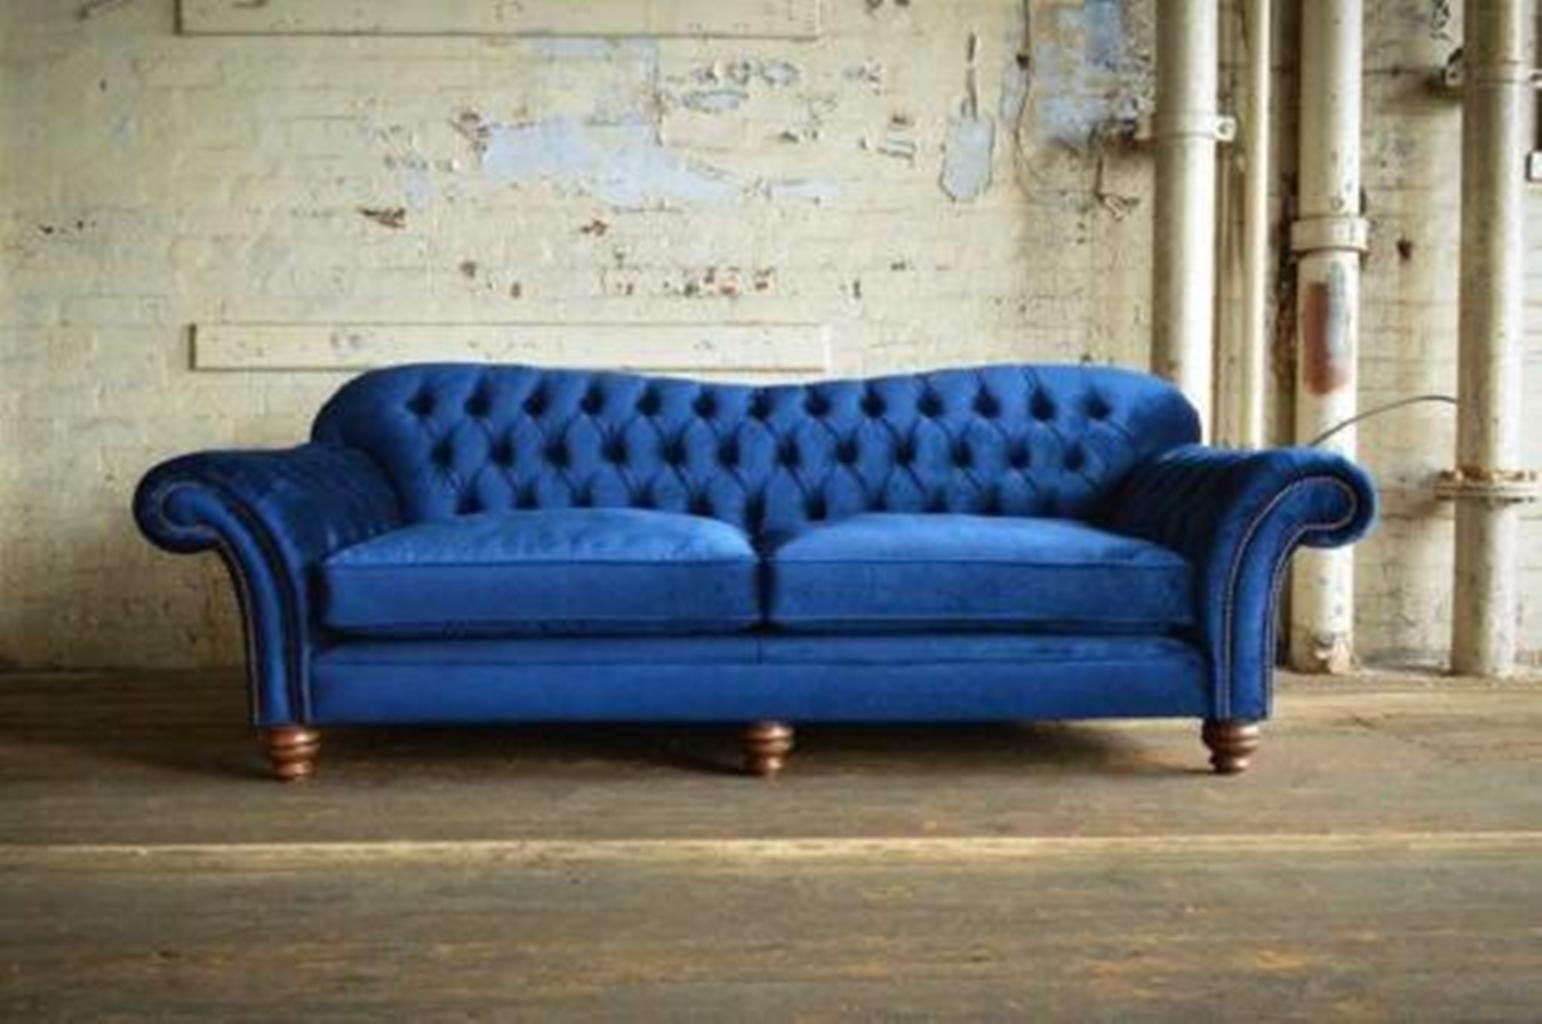 Sofa JVmoebel Textil Couch XXL Couchen Big Designer Chesterfield sofa Chesterfield-Sofa,